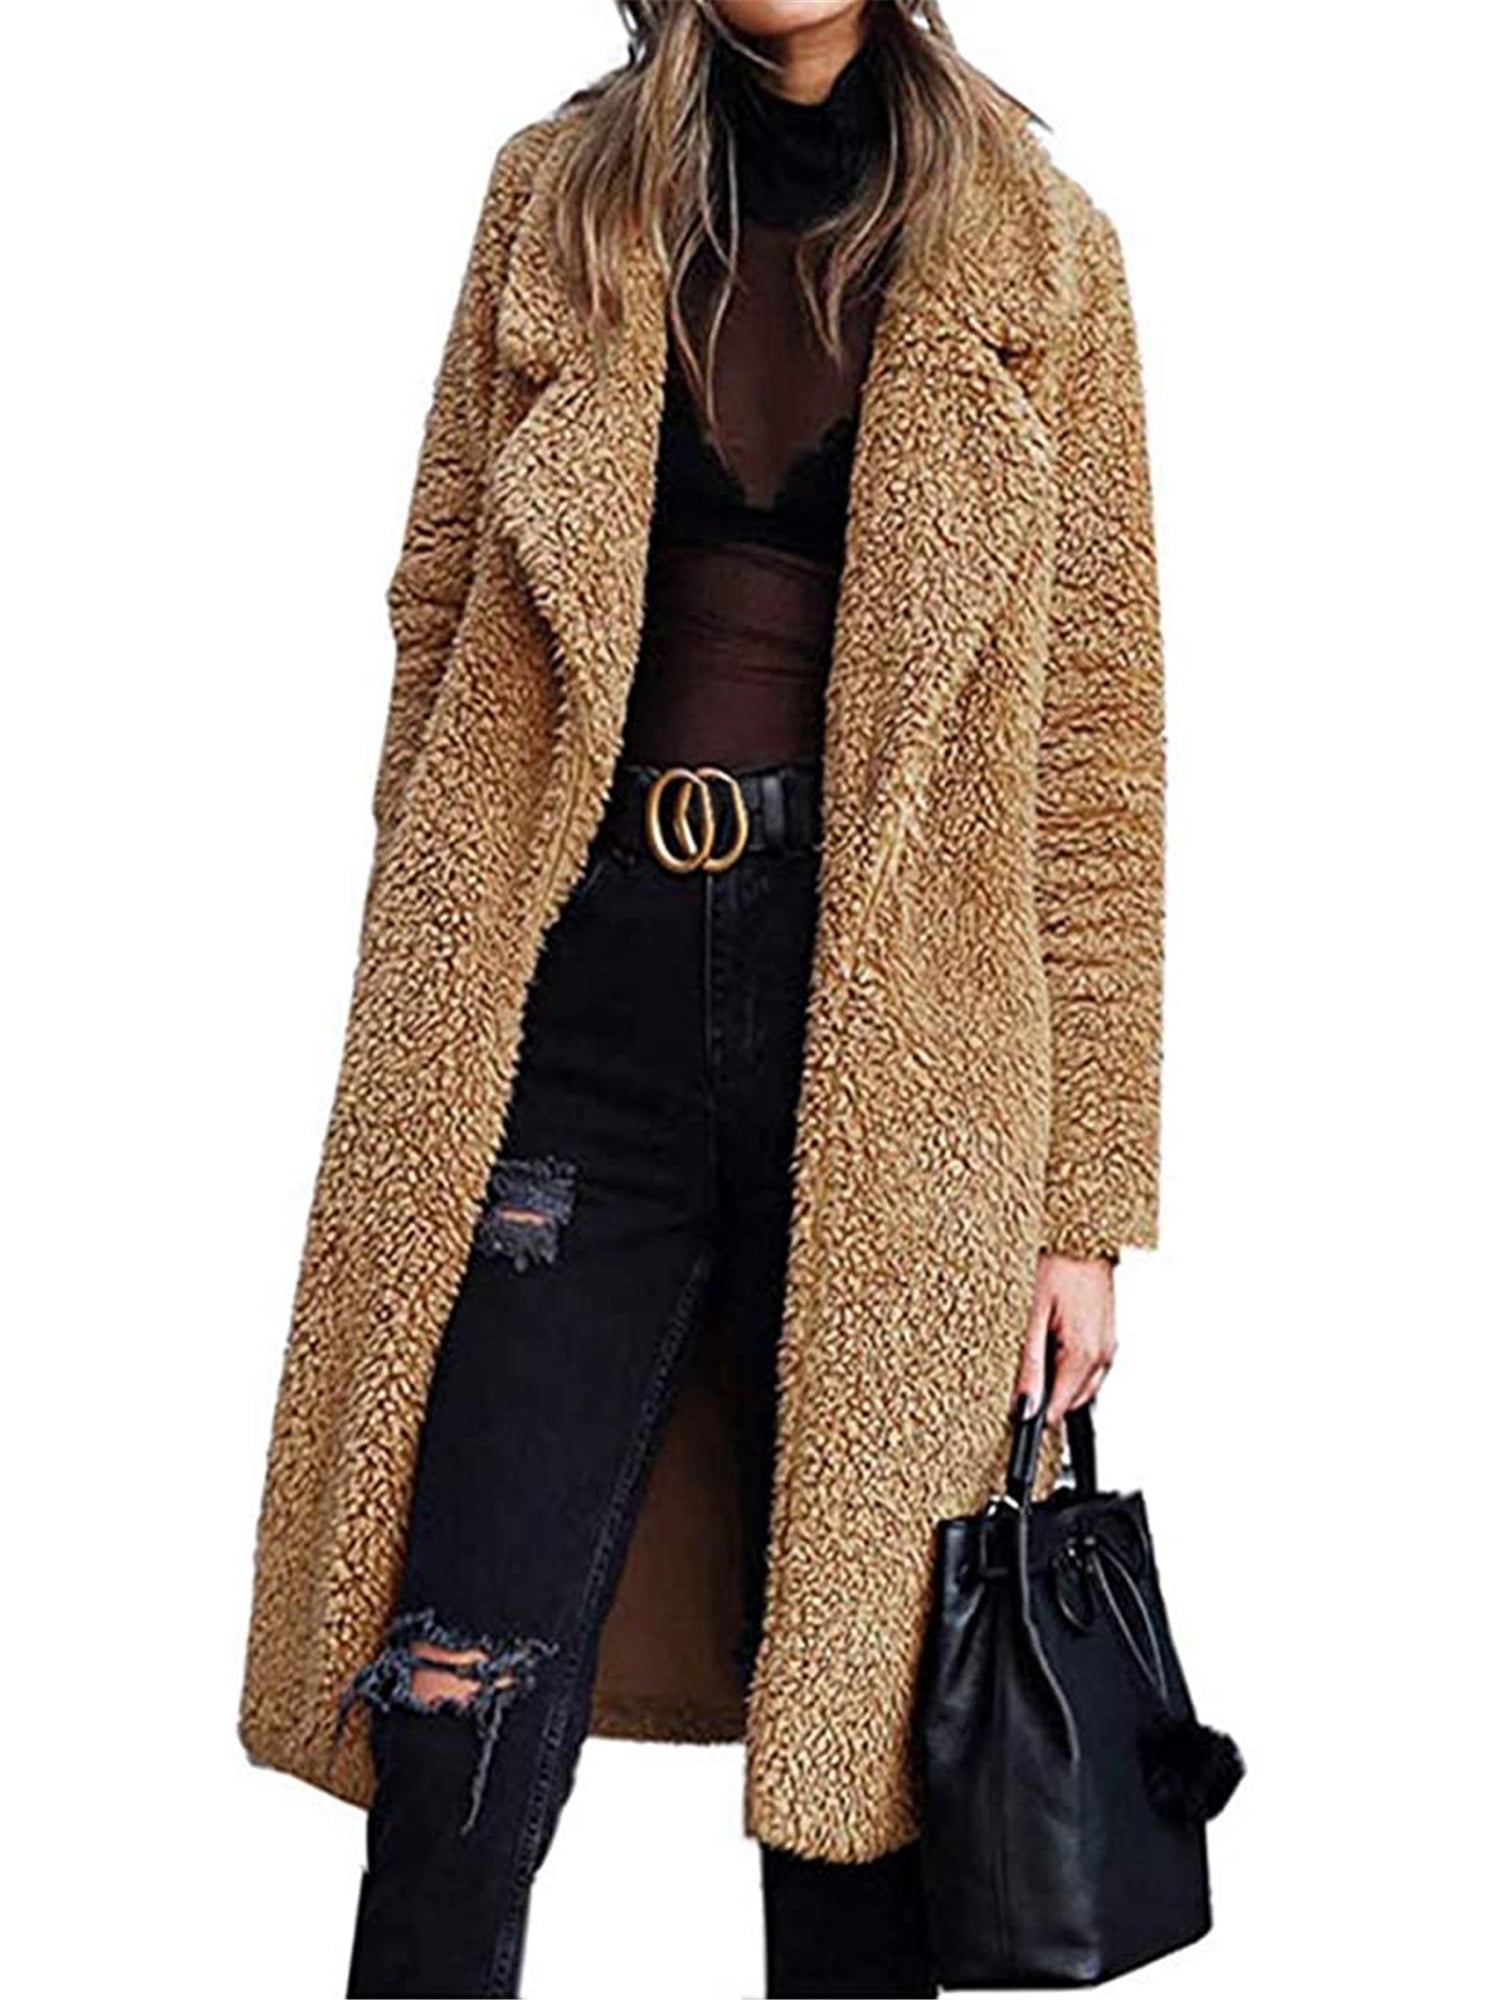 Per Women’s Long Sleeves Faux Fur Coat Long-Wool Warm Short Jacket for Winter 